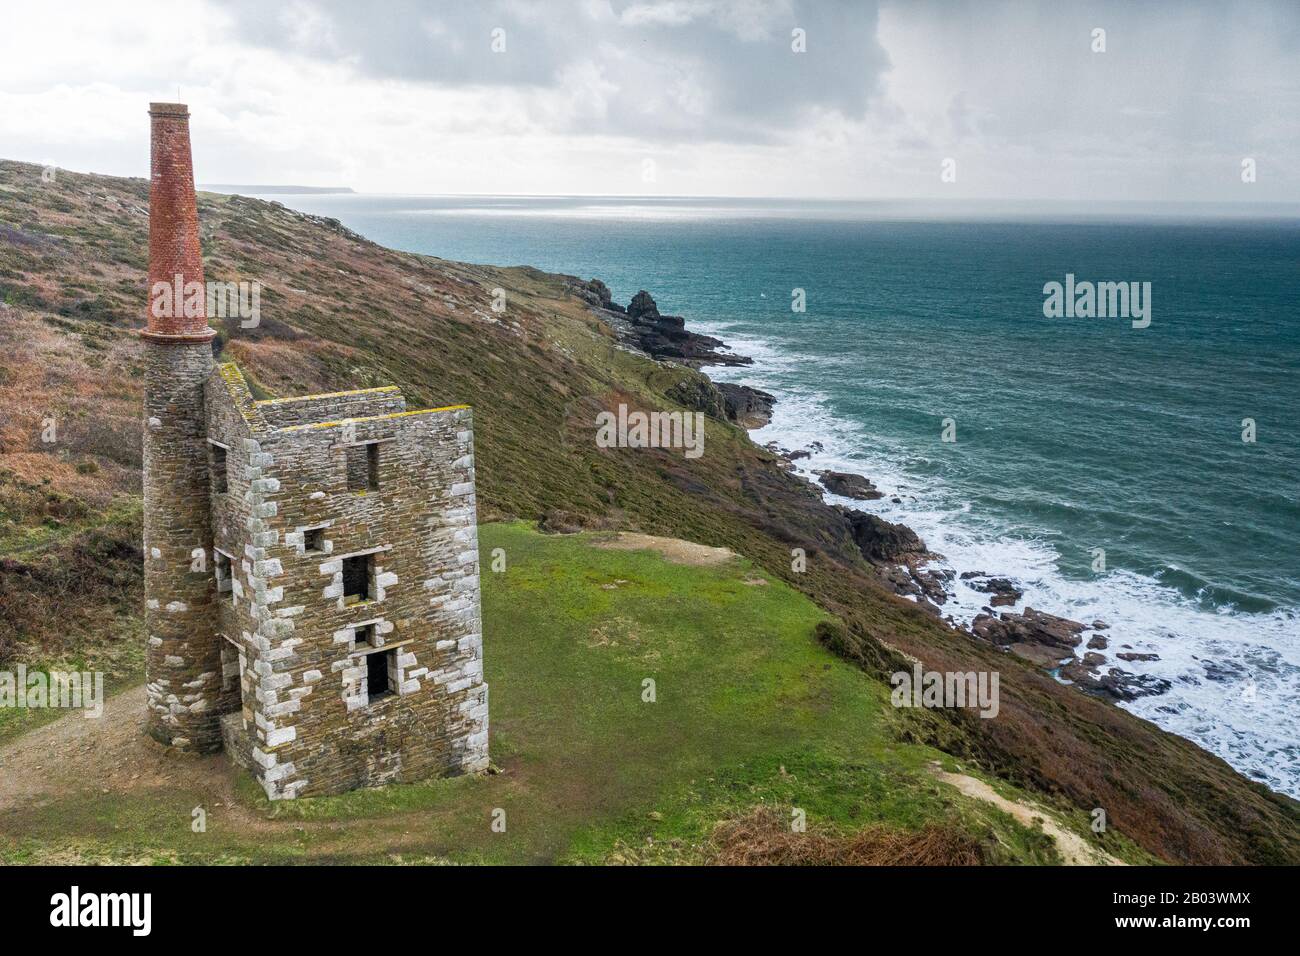 Maison à la mine sur les falaises de Cornish donnant sur la mer rugueuse. Banque D'Images